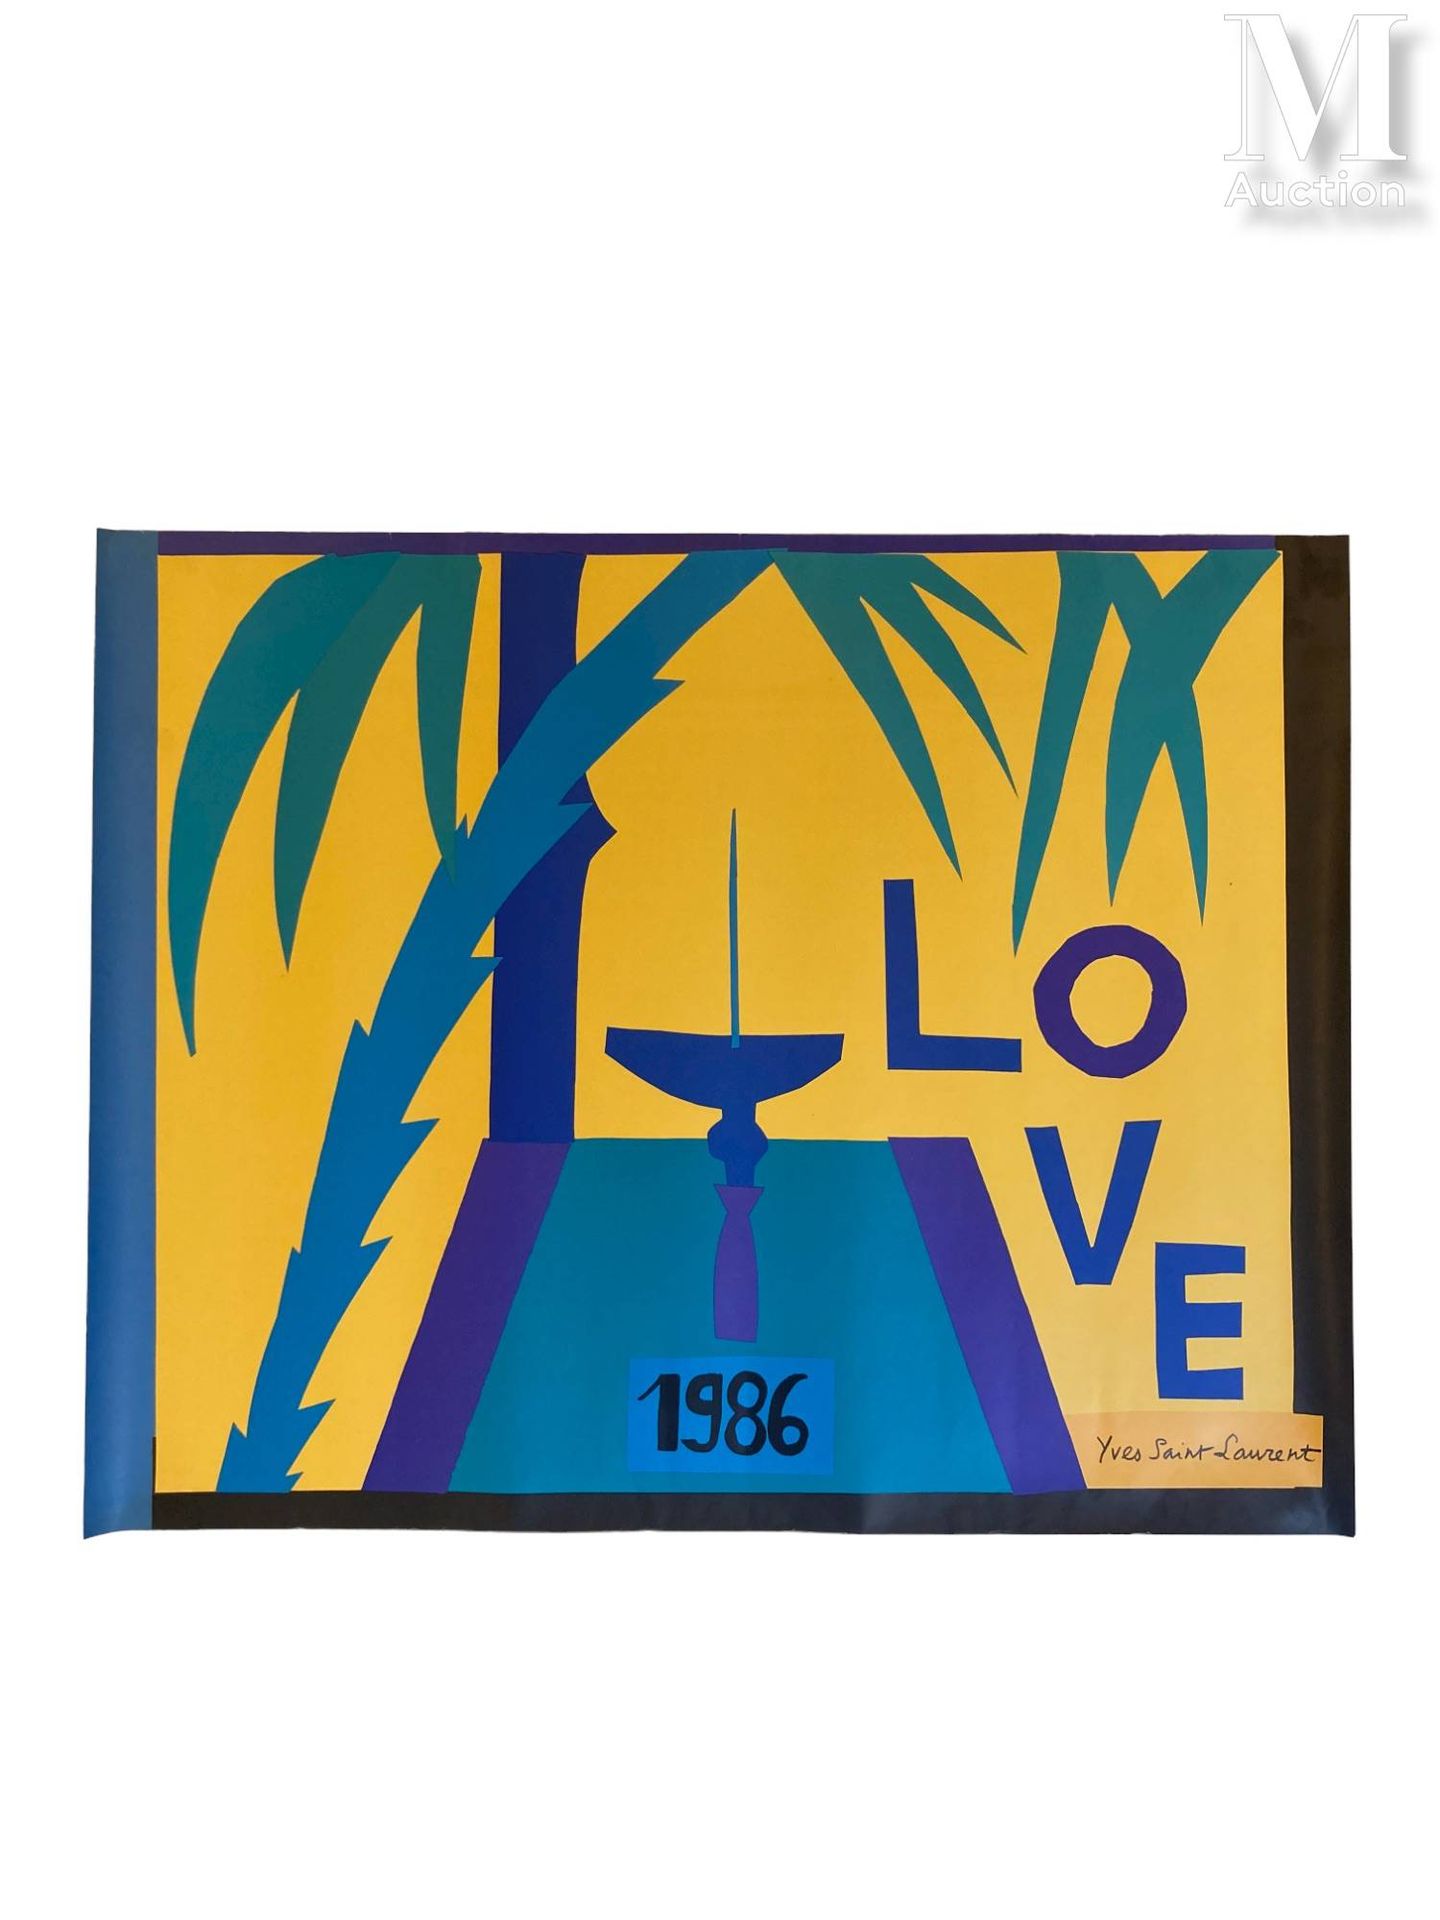 YVES SAINT LAURENT - 1986 Poster "Love"



Druck auf Papier 

68 x 54 cm